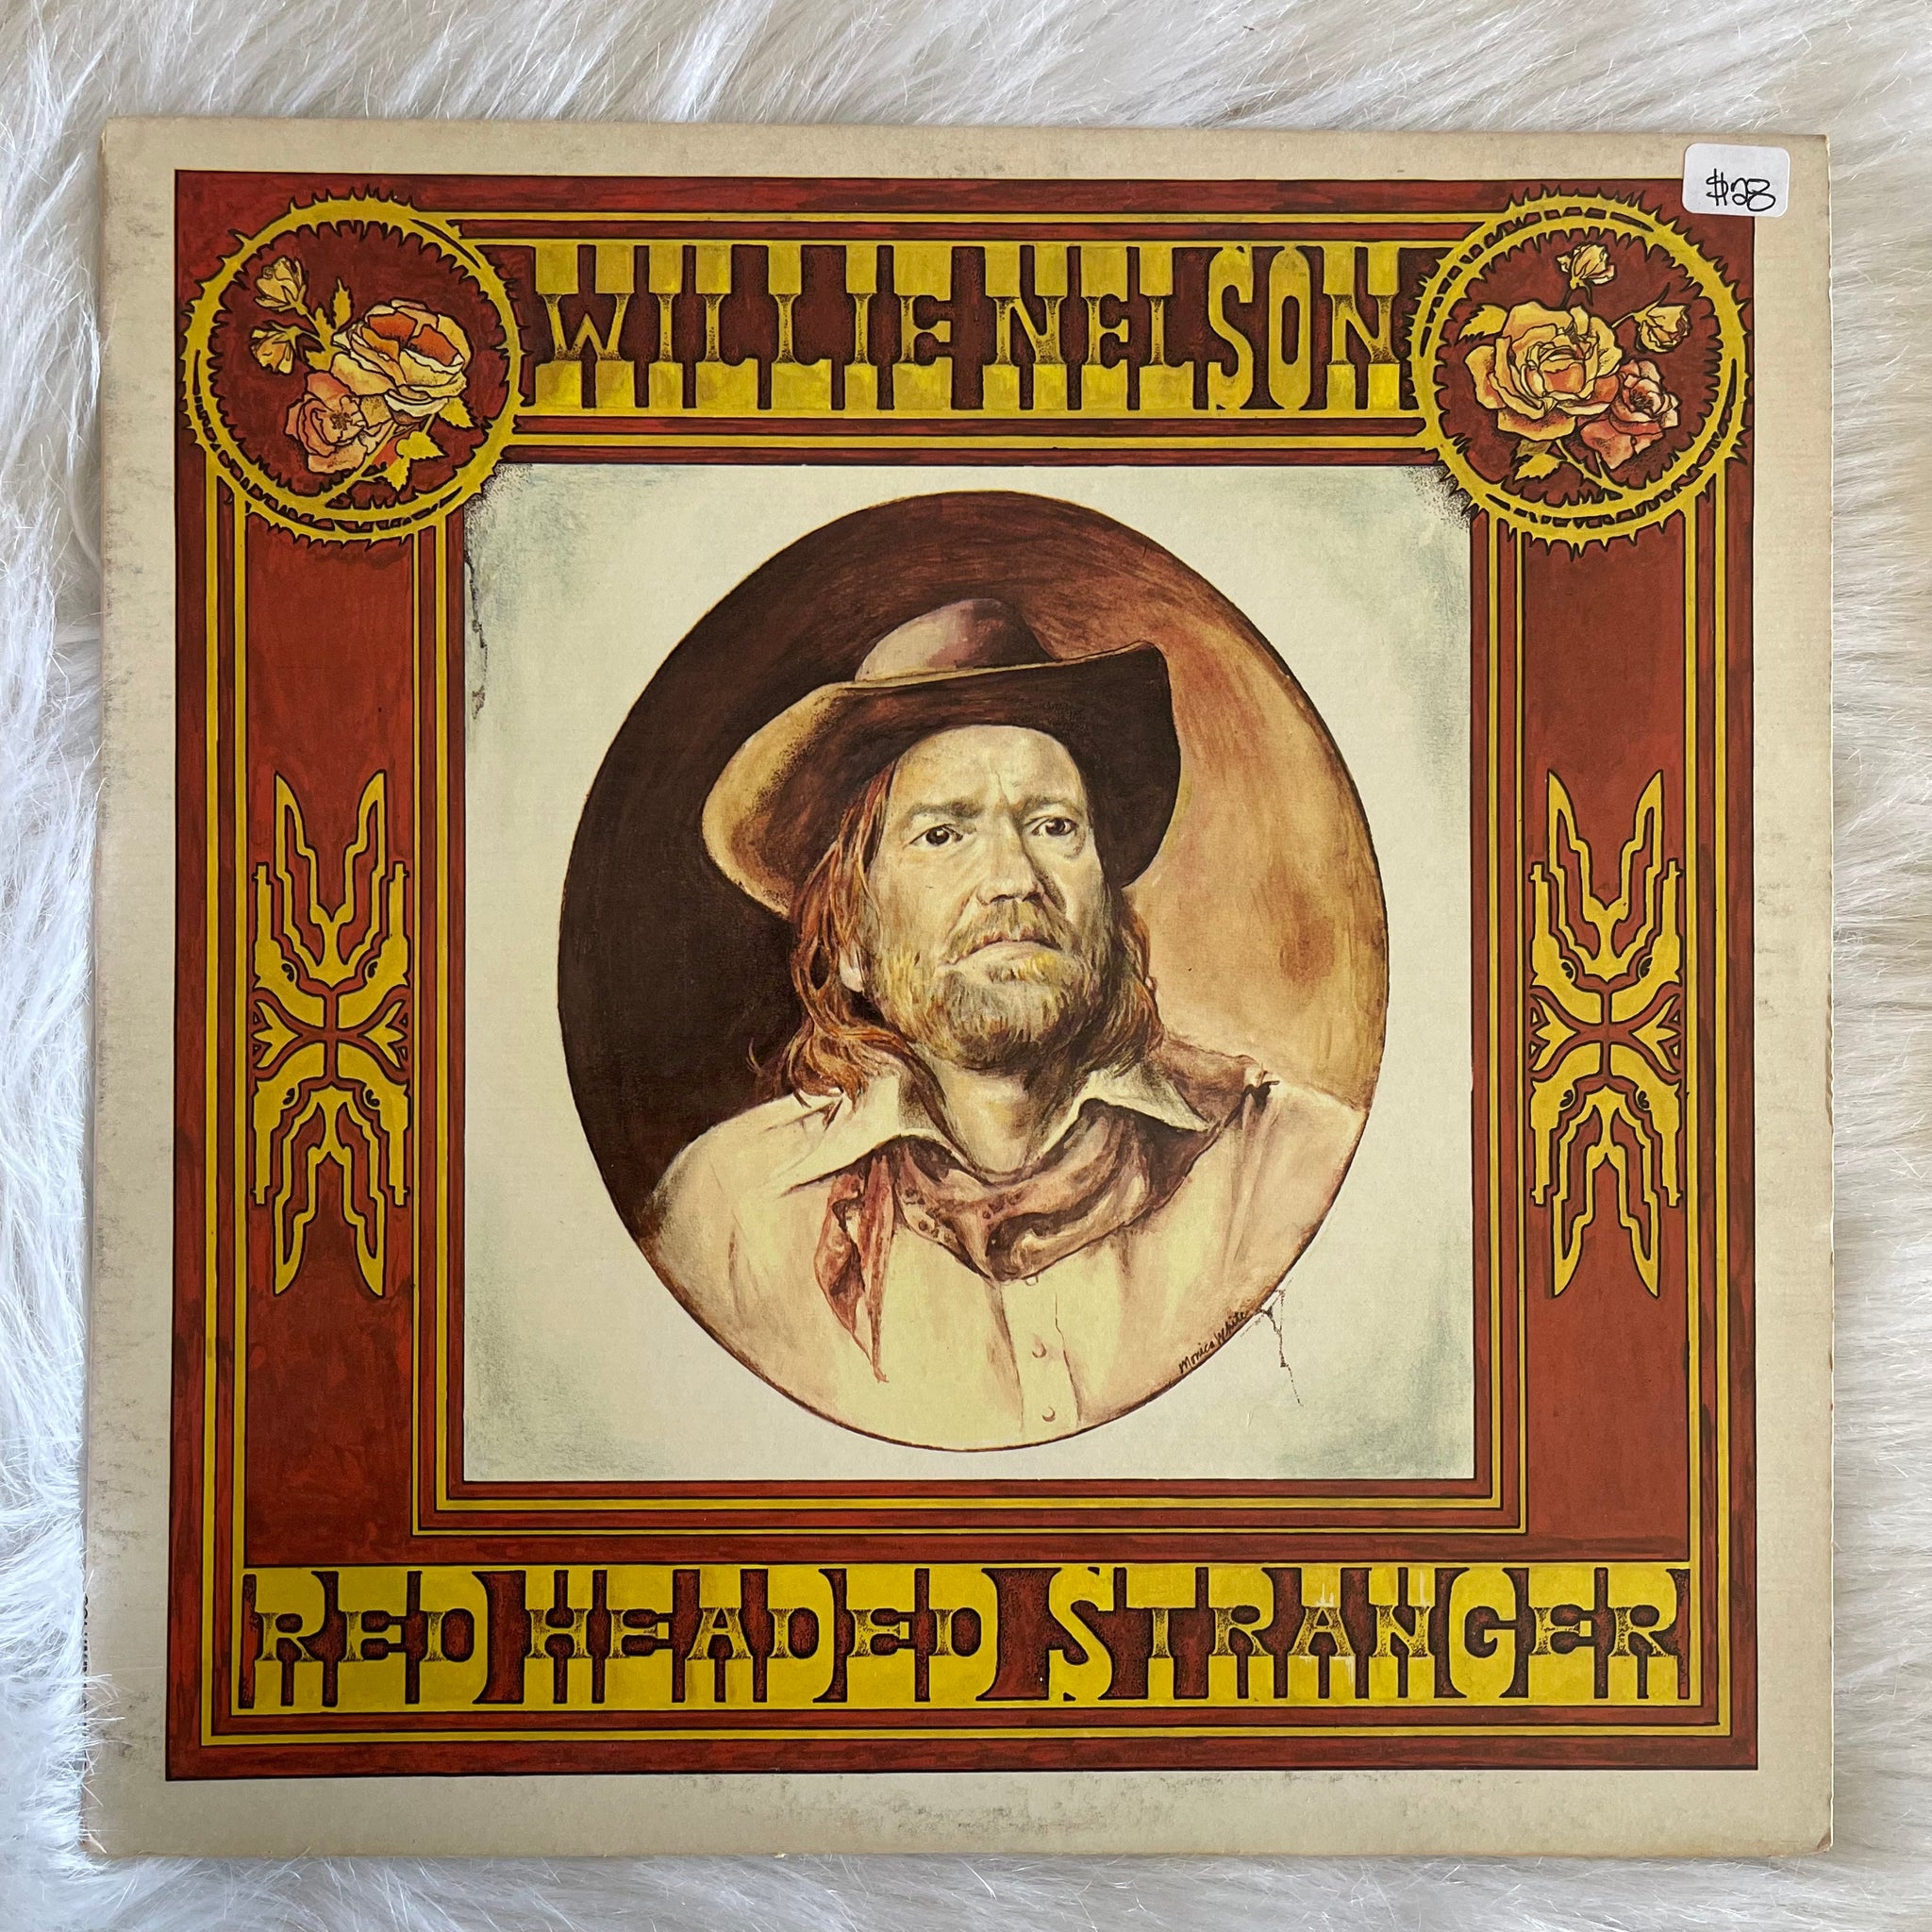 Nelson Willie-Red Headed Stranger